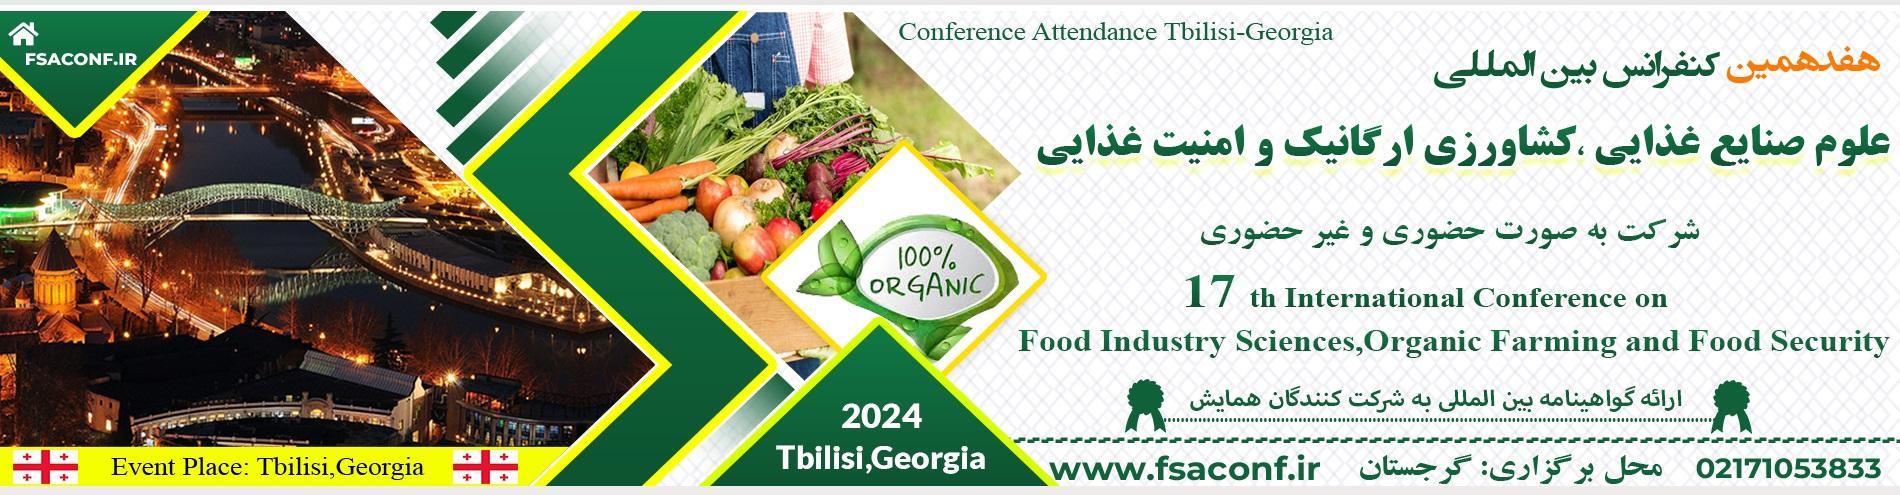 کنفرانس بین المللی علوم صنایع غذایی، کشاورزی ارگانیک و امنیت غذایی